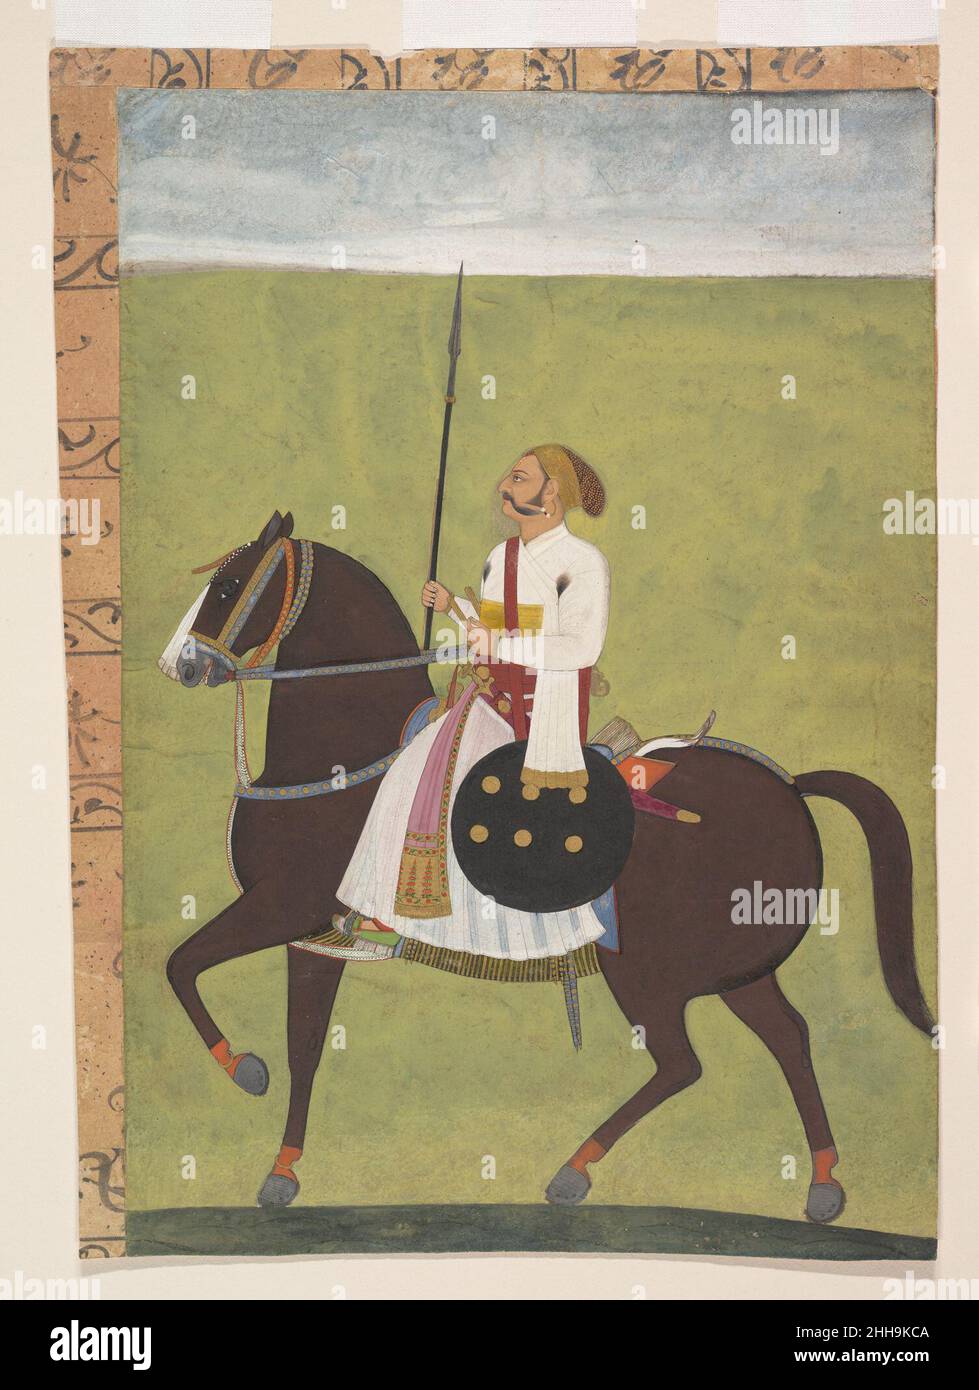 Portrait équestre d'un noble ca.1710–20 Inde (Rajasthan, Jodhpur) en utilisant des champs de couleur audacieux, cet artiste Marwari se concentre sur la figure primaire, lui donnant une grande présence.Le bouclier et la lance soulignent le statut du noble sur le champ de bataille et, par conséquent, au tribunal.La représentation accomplie du visage du cavalier en profil et son costume subtilement rendu confirment les liens avec la tradition de peinture de Mughal dans la cour de Jodhpur pendant cette période sous l'artiste Dalchand.Portrait équestre d'un noble 65003 Banque D'Images